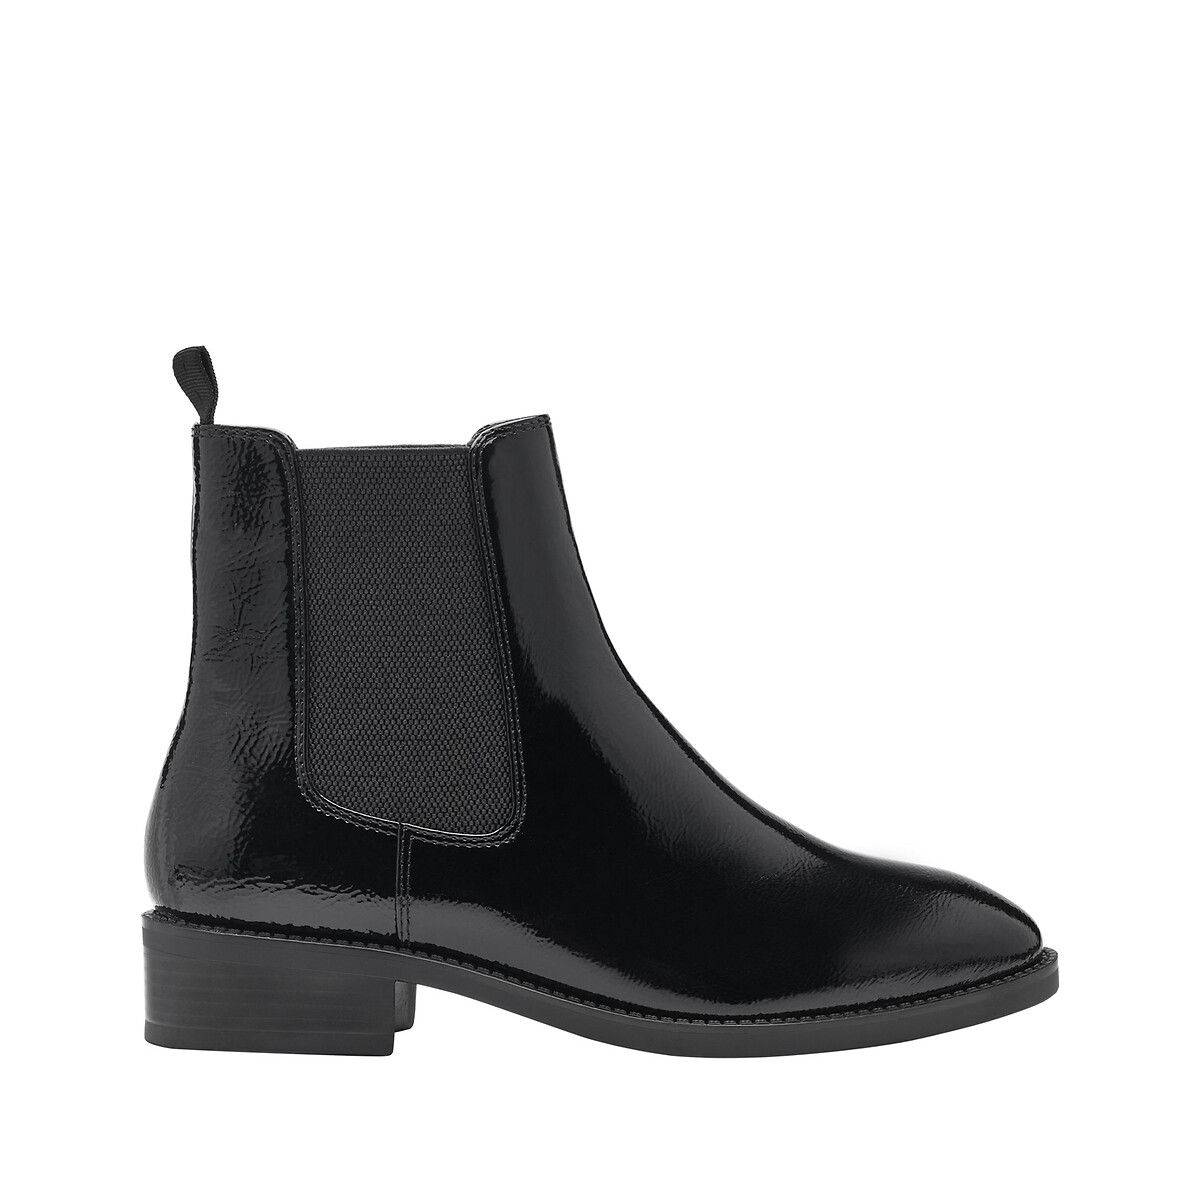 Chelsea boots, black patent, Tamaris | La Redoute